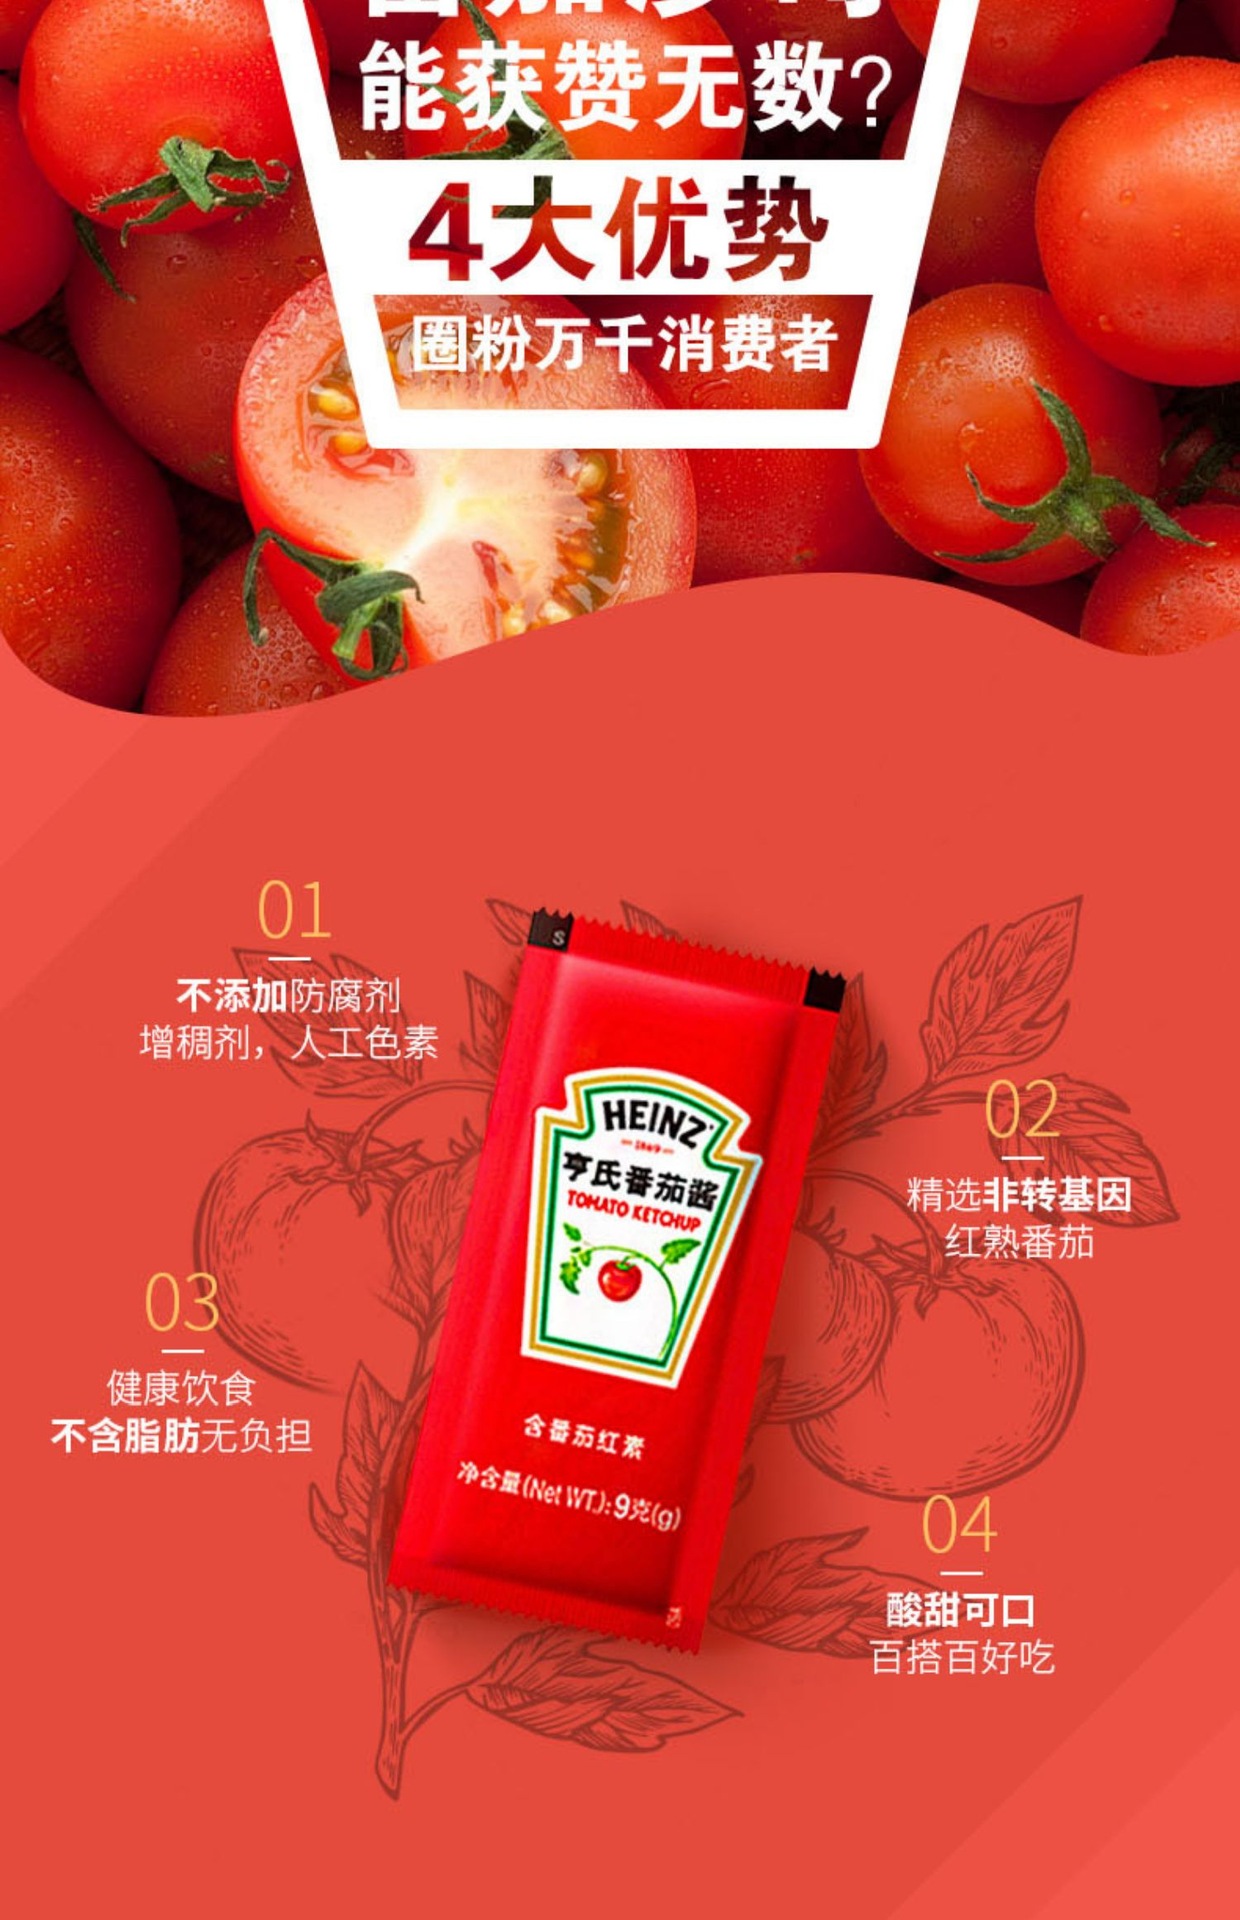 番茄酱包装标签设计作品鉴赏 - 艺点创意商城